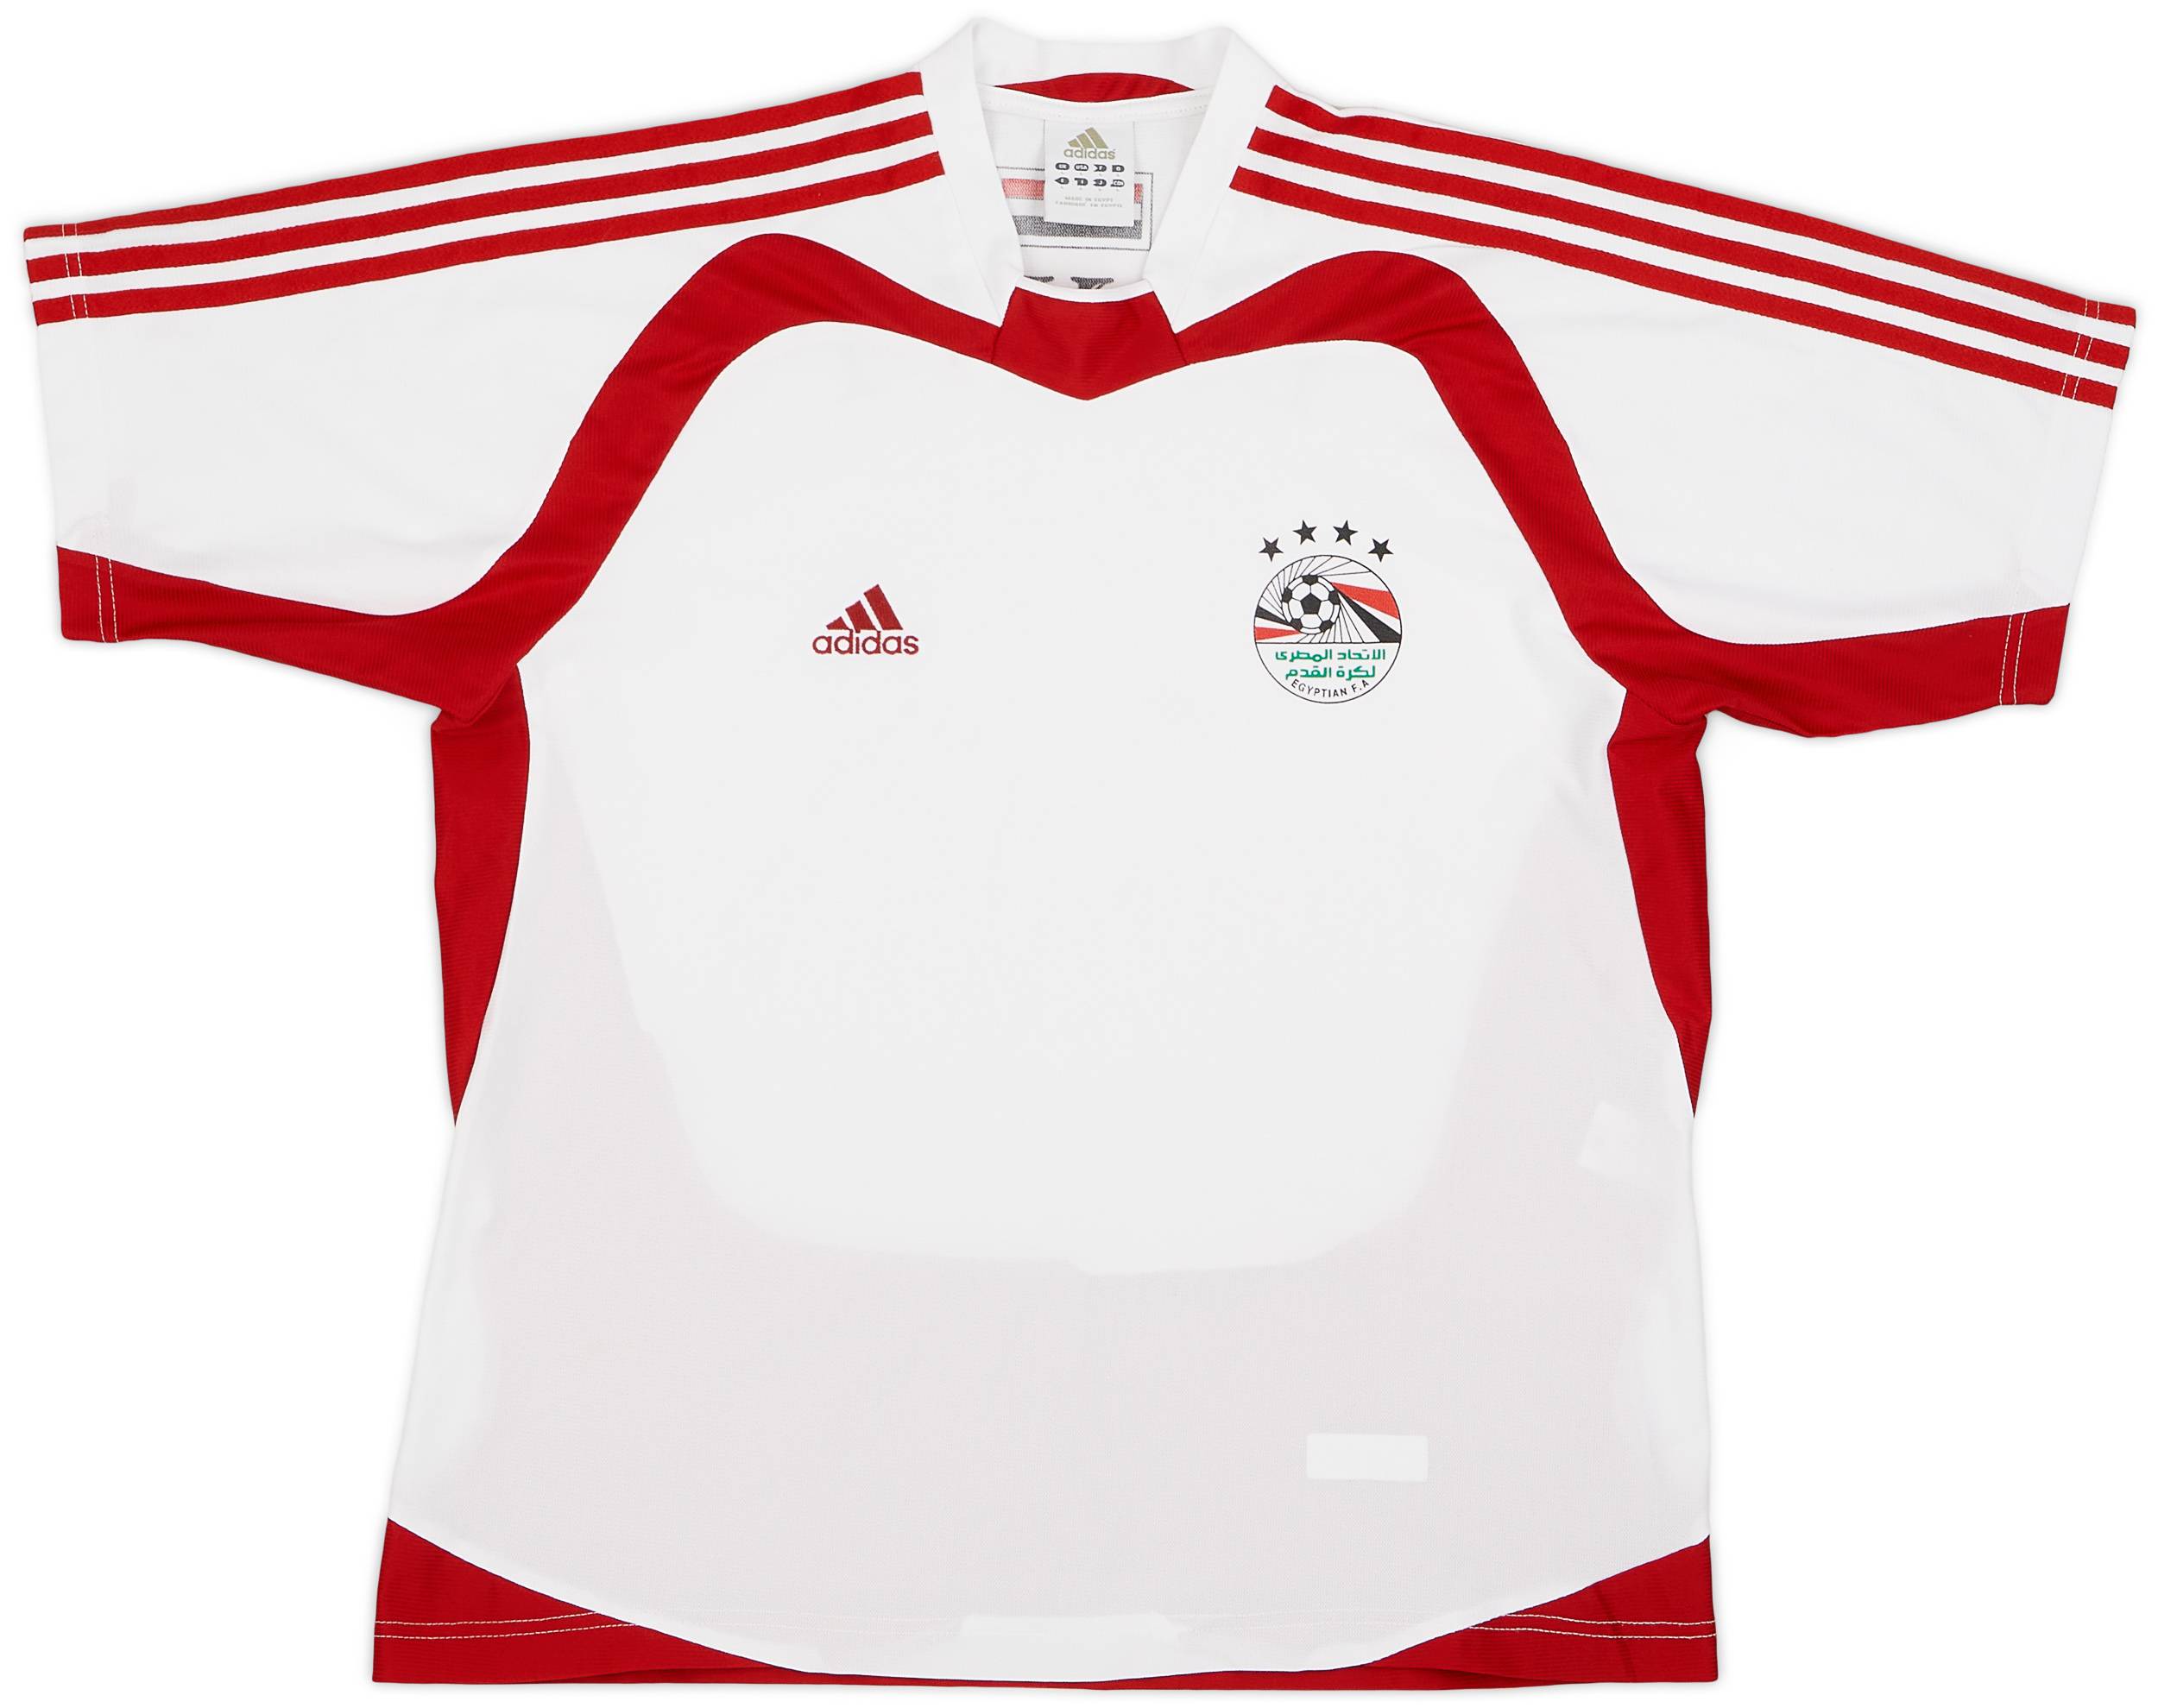 2005 Egypt Away Shirt - 9/10 - (L)